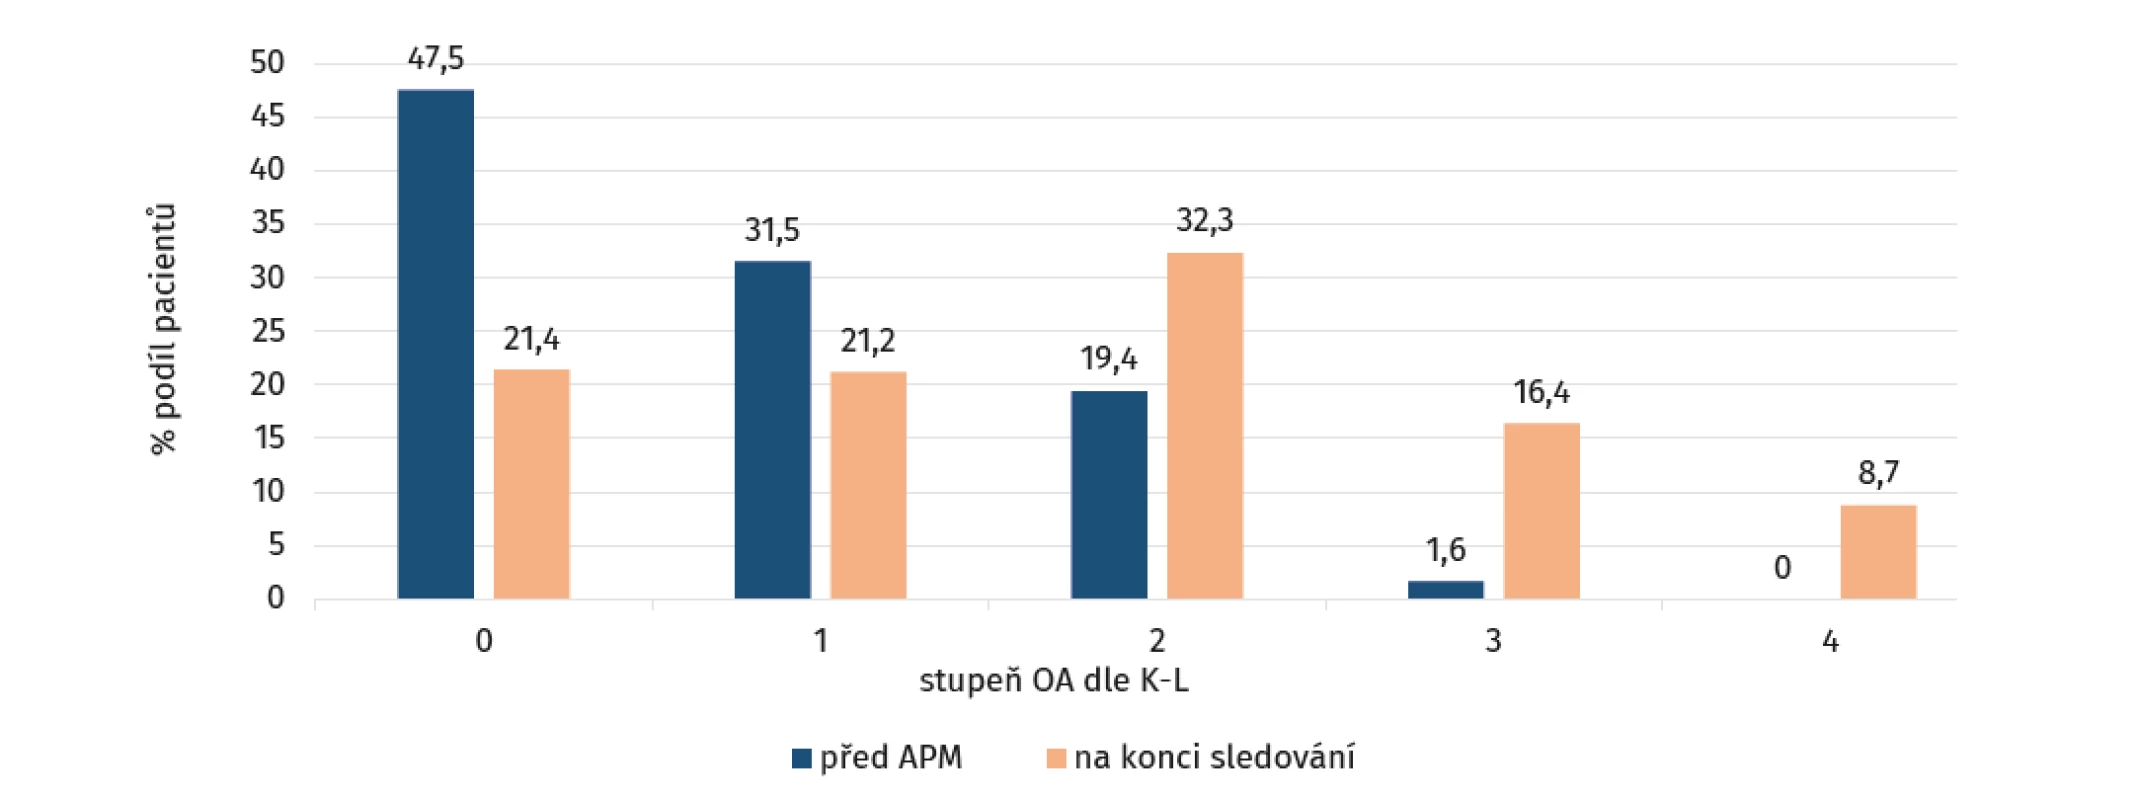 Grafické znázornění radiologických výsledků ze zahrnutých studií formou jejich podílu v rámci jednotlivých stupňů
osteoartrózy (OA) před artroskopickou parciální meniskektomií (APM; modrá) a na konci sledování (oranžová)